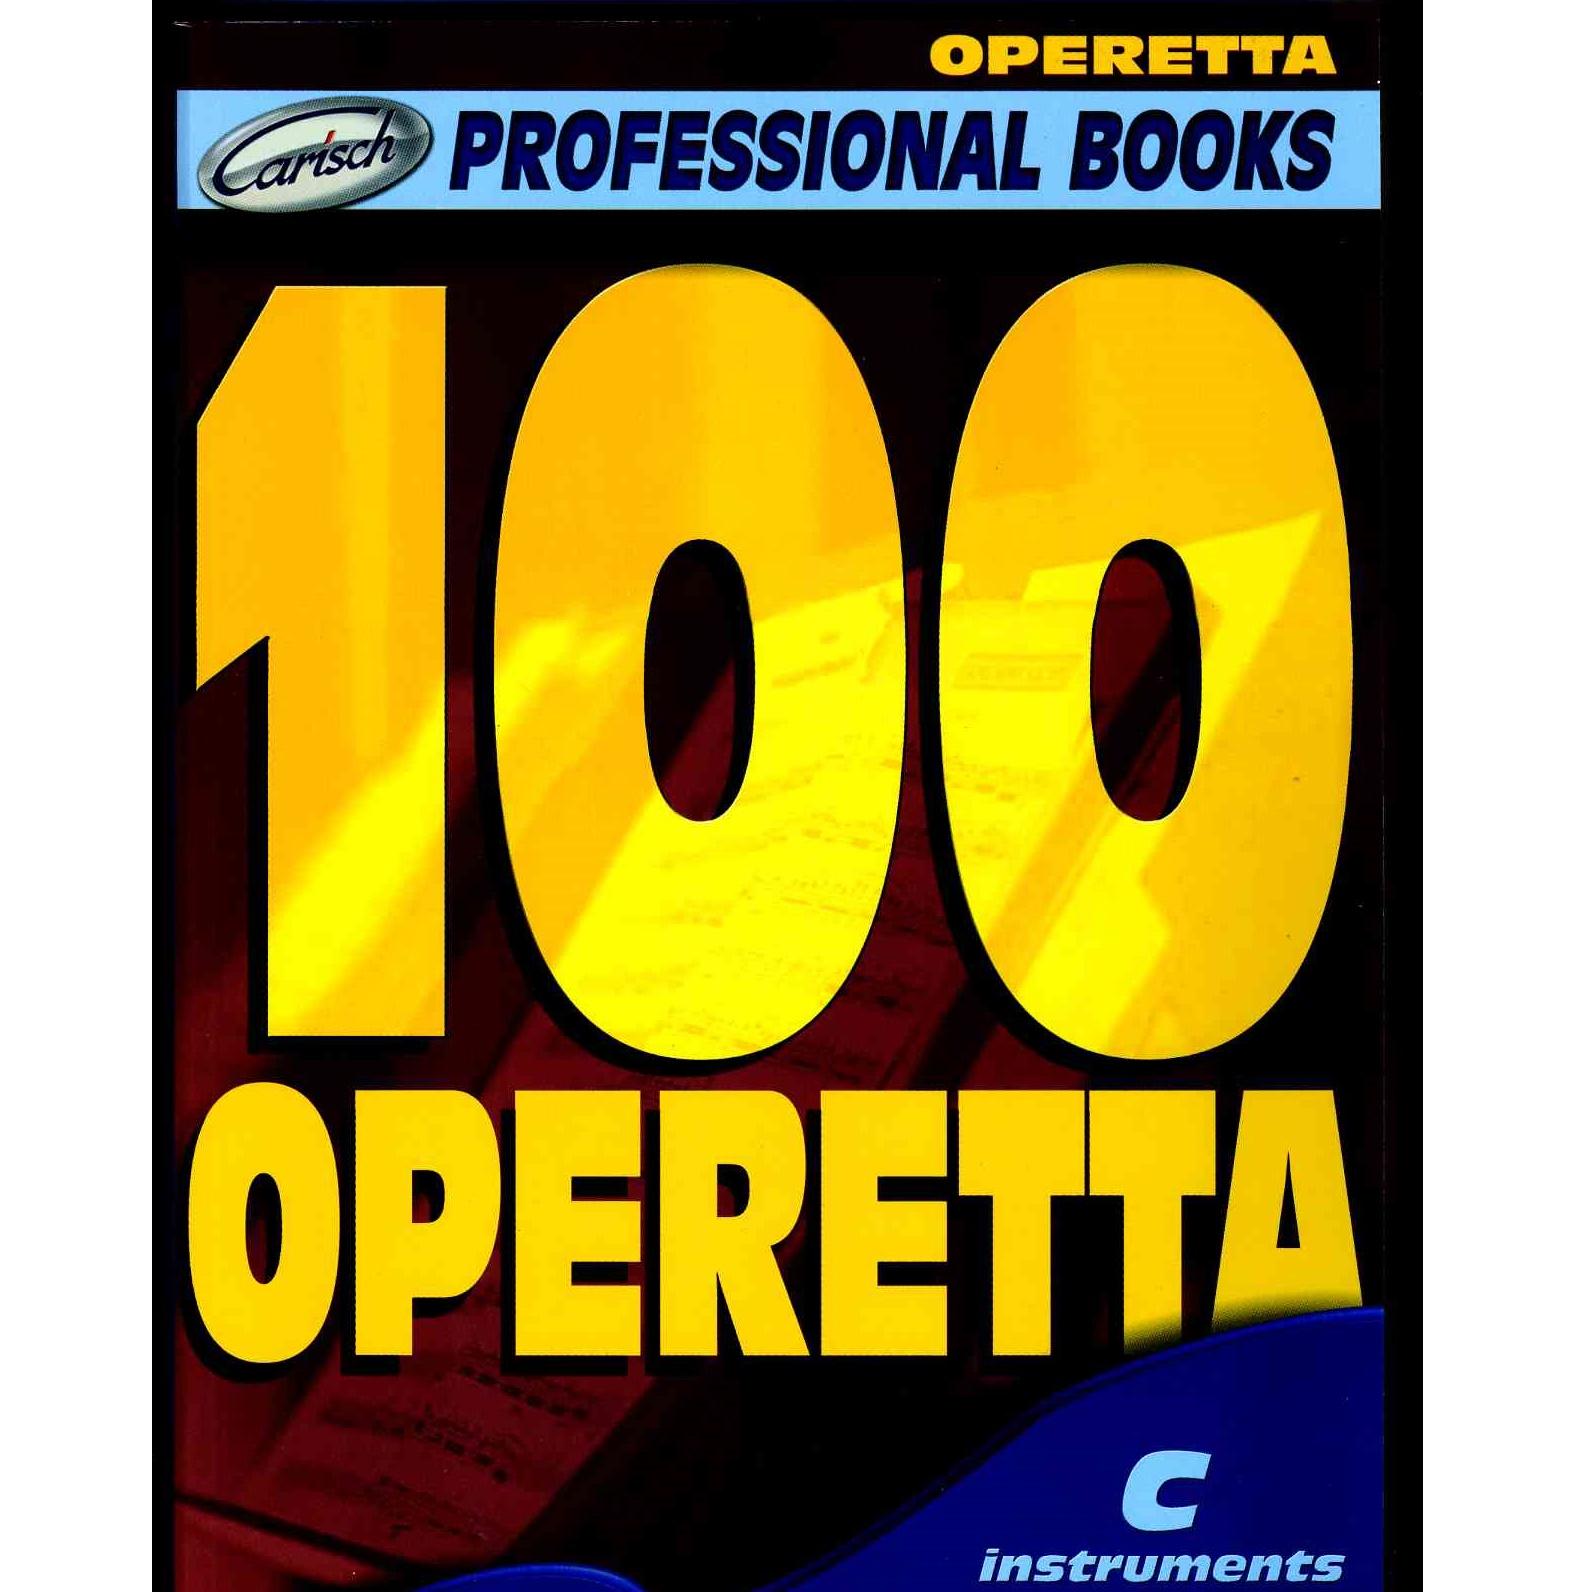 Professional Books 100 Operetta - Carisch